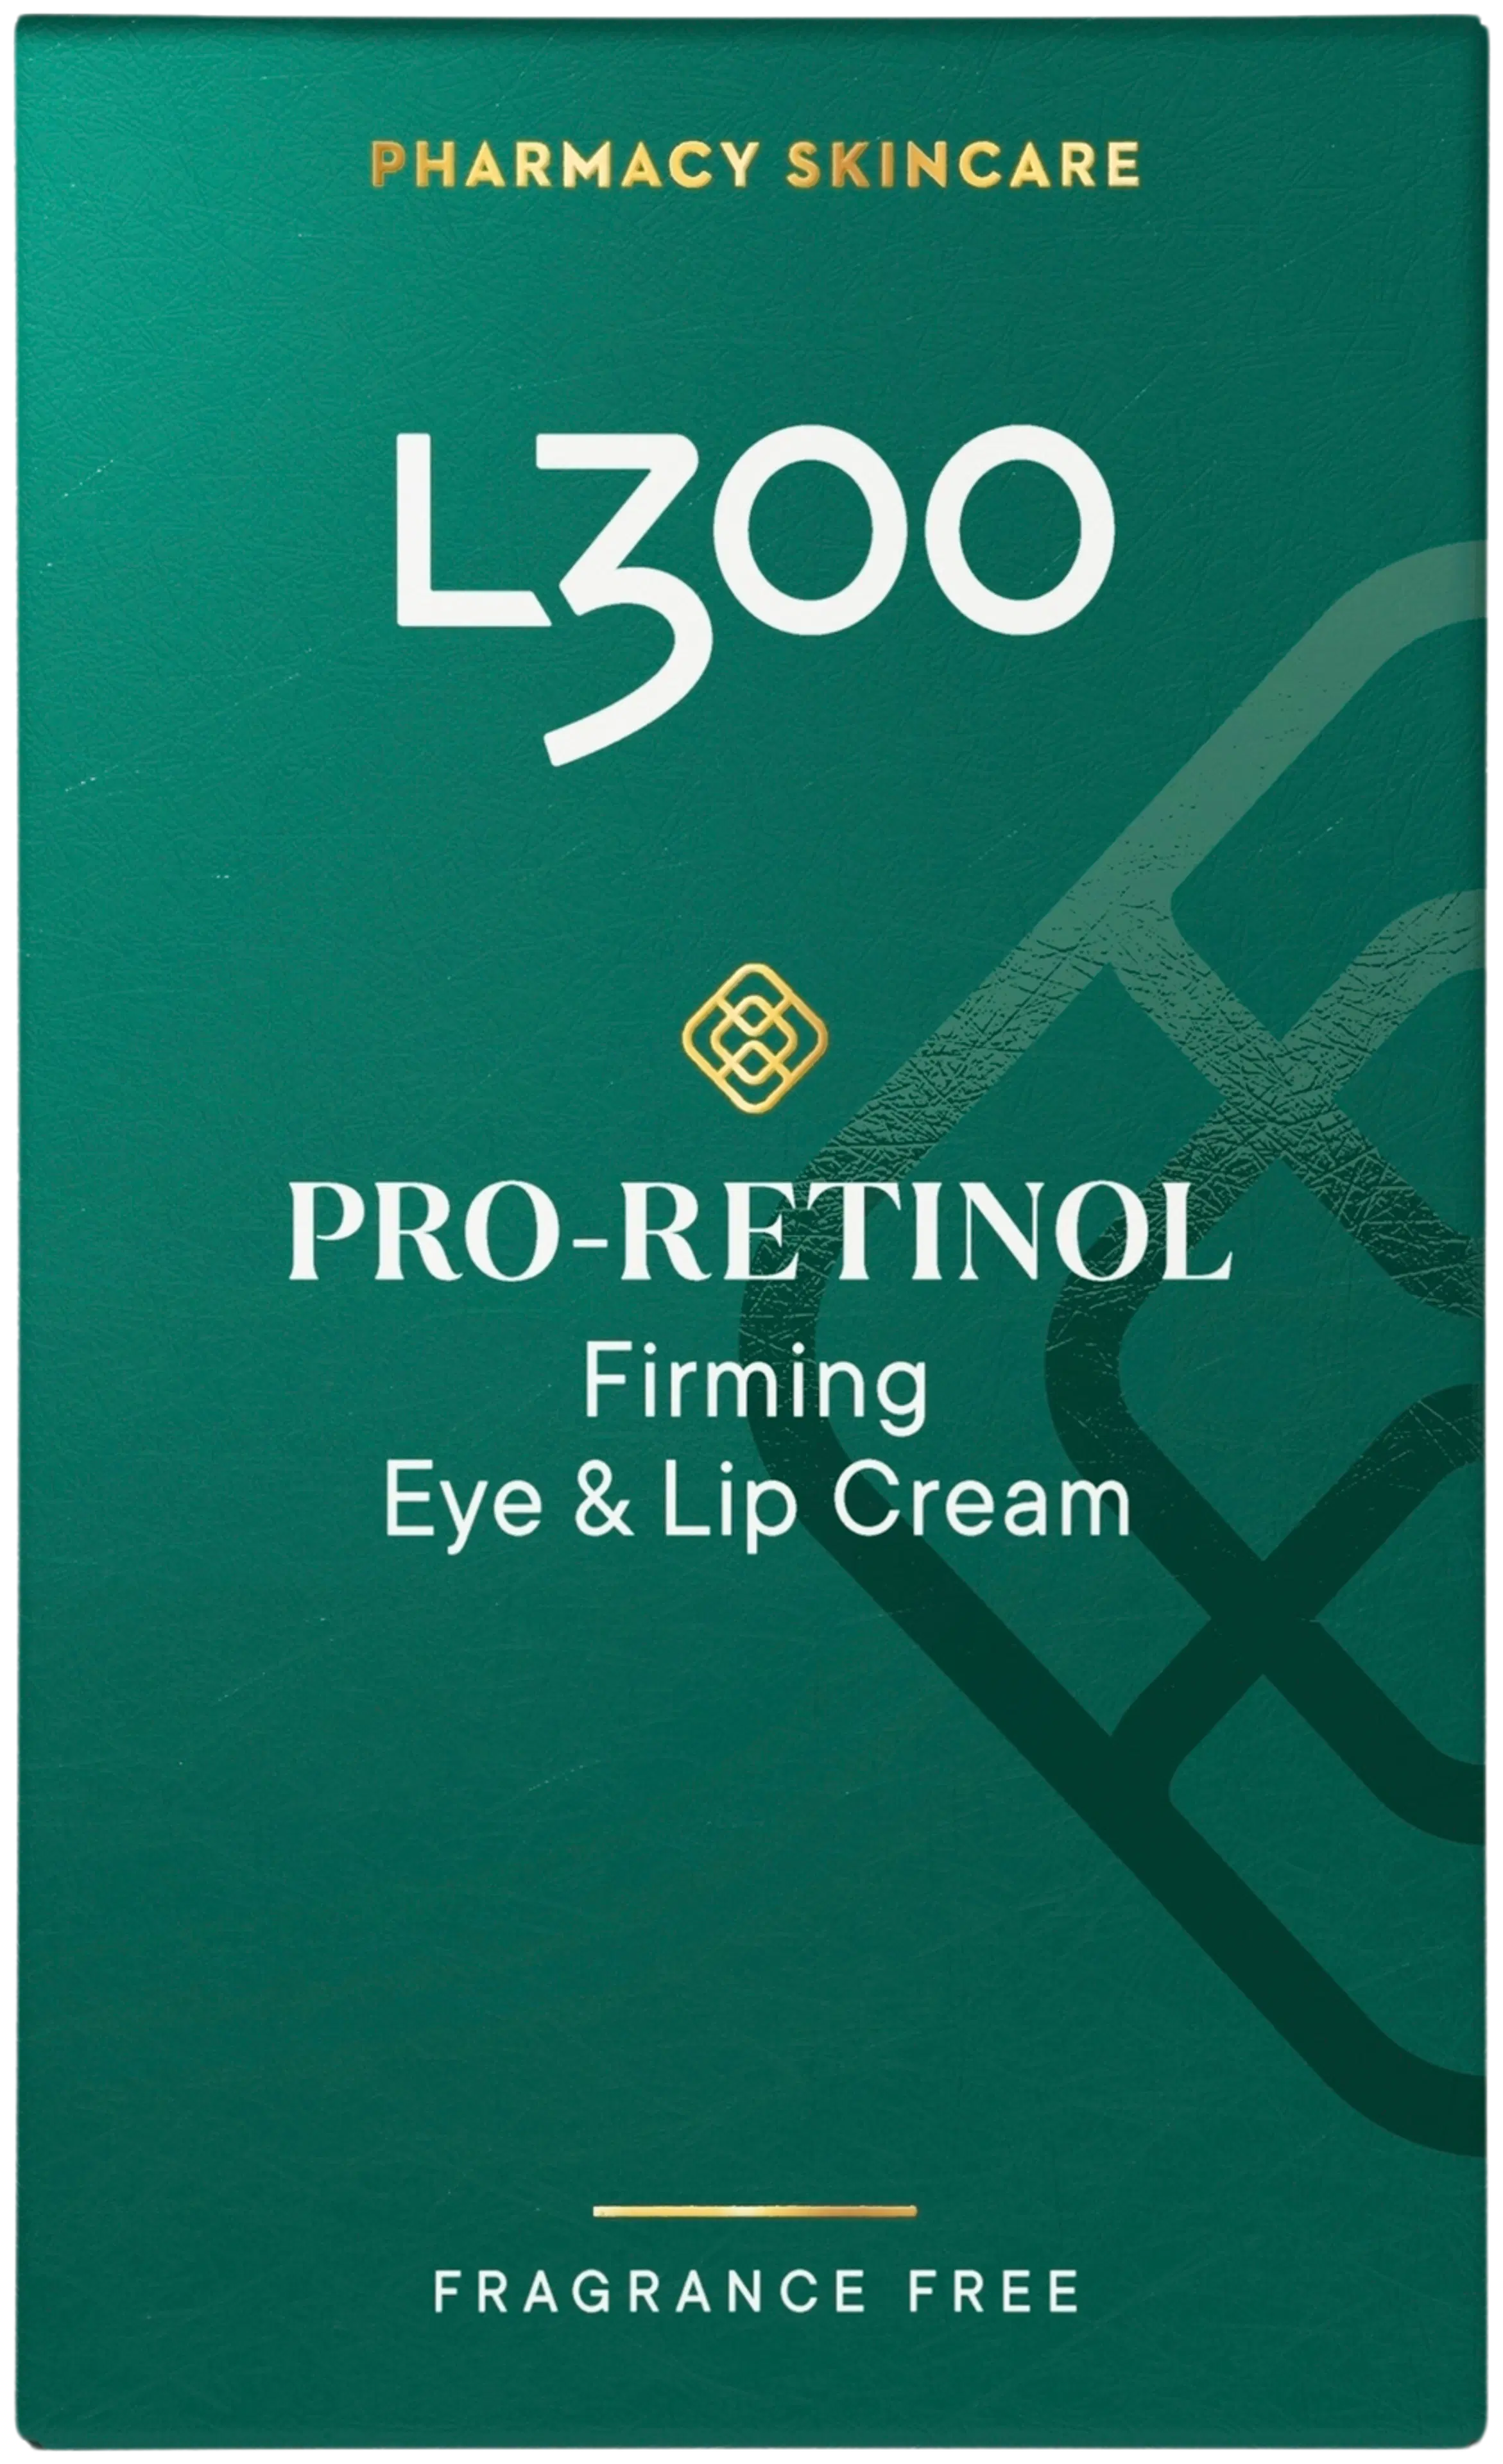 L300 Pro-Retinol Firming Eye & Lip Cream fragrance free hajusteeton voide silmien ja huulien ympärillä olevalle iholle 15ml